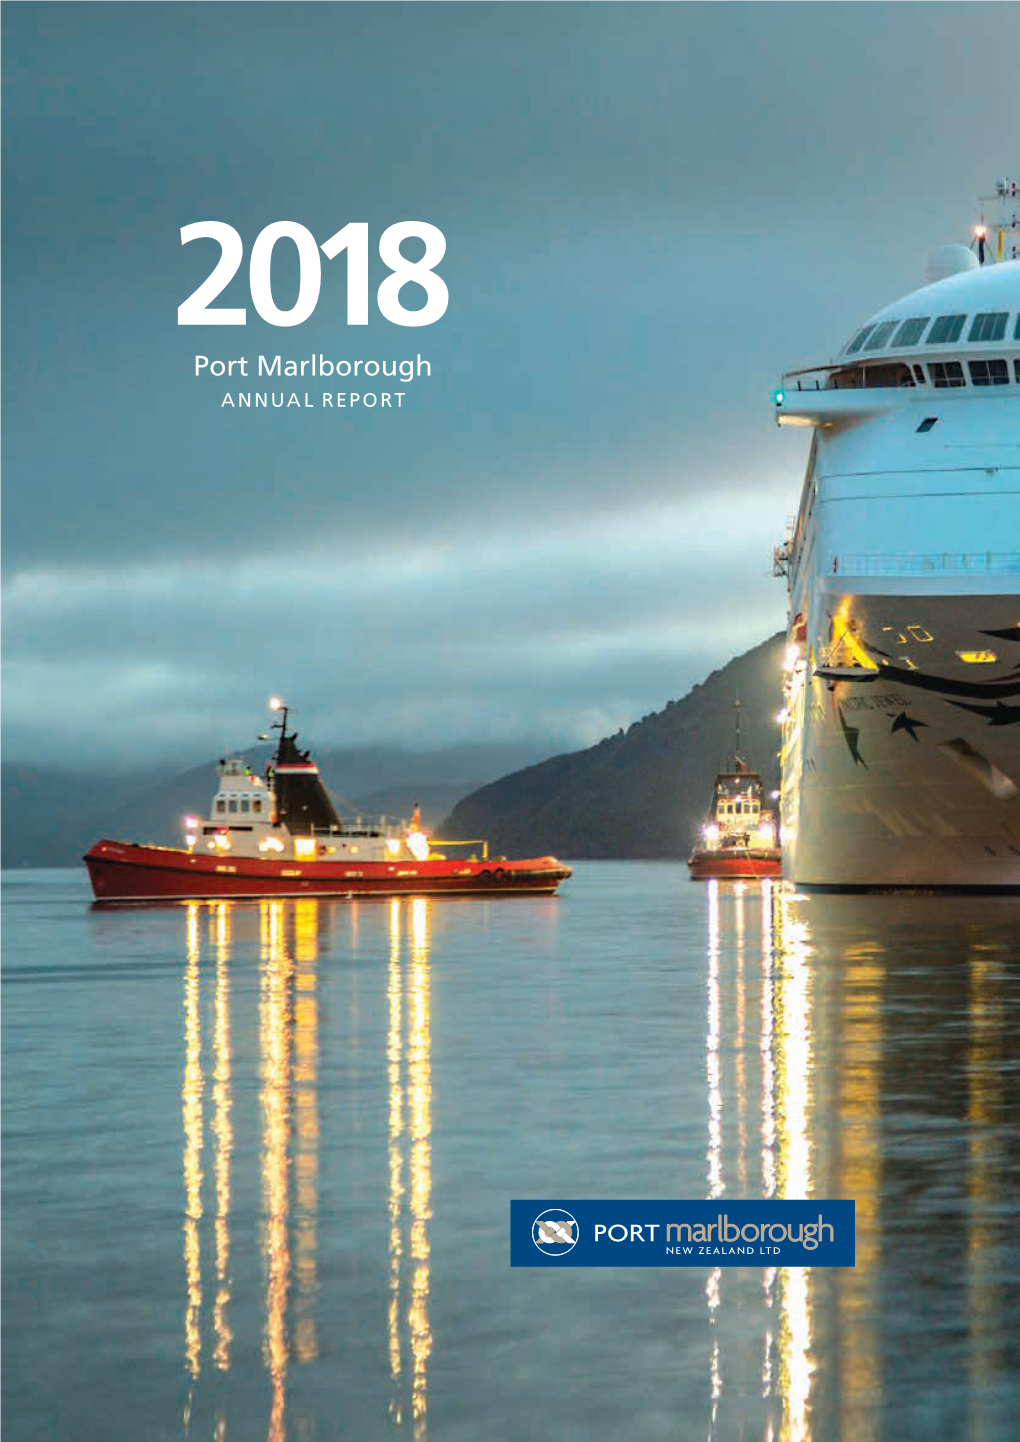 Port Marlborough 2018 Annual Report